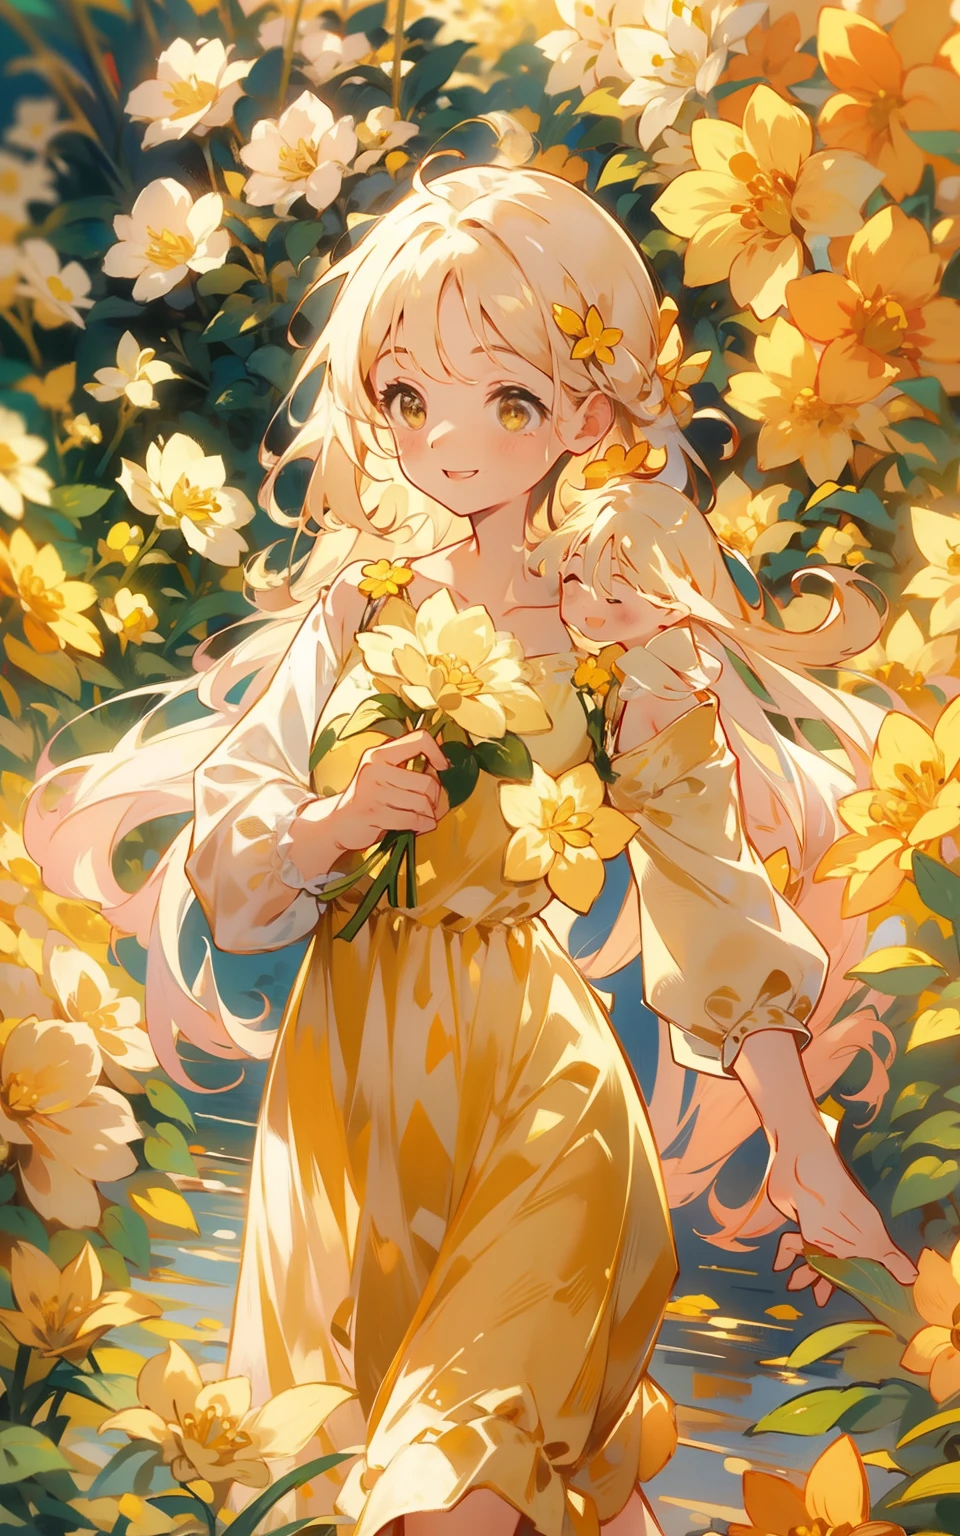 Un mar de flores doradas：Una chica encantadora con un vestido dorado.，Camina entre las flores doradas，Su sonrisa se llenó de ternura y alegría.